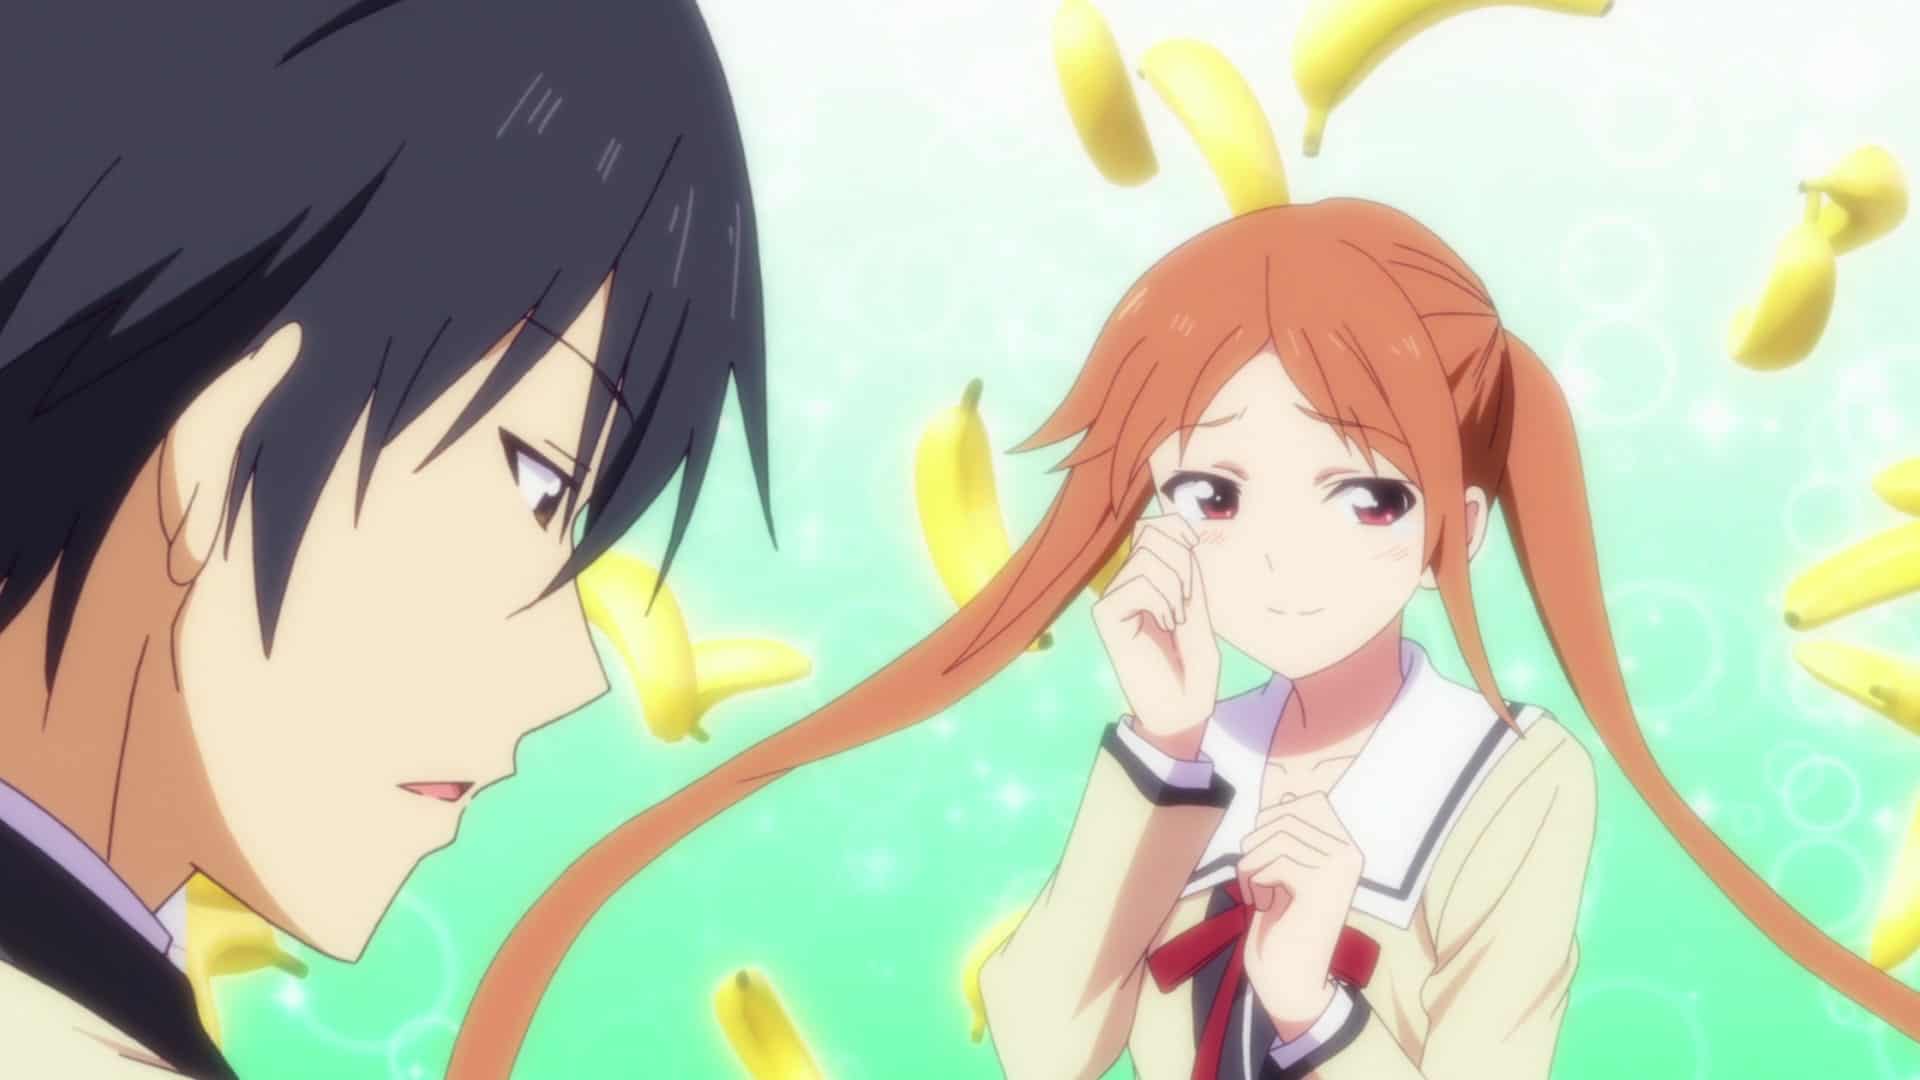 Akuru is speaking while Yoshiko is dreaming about bananas